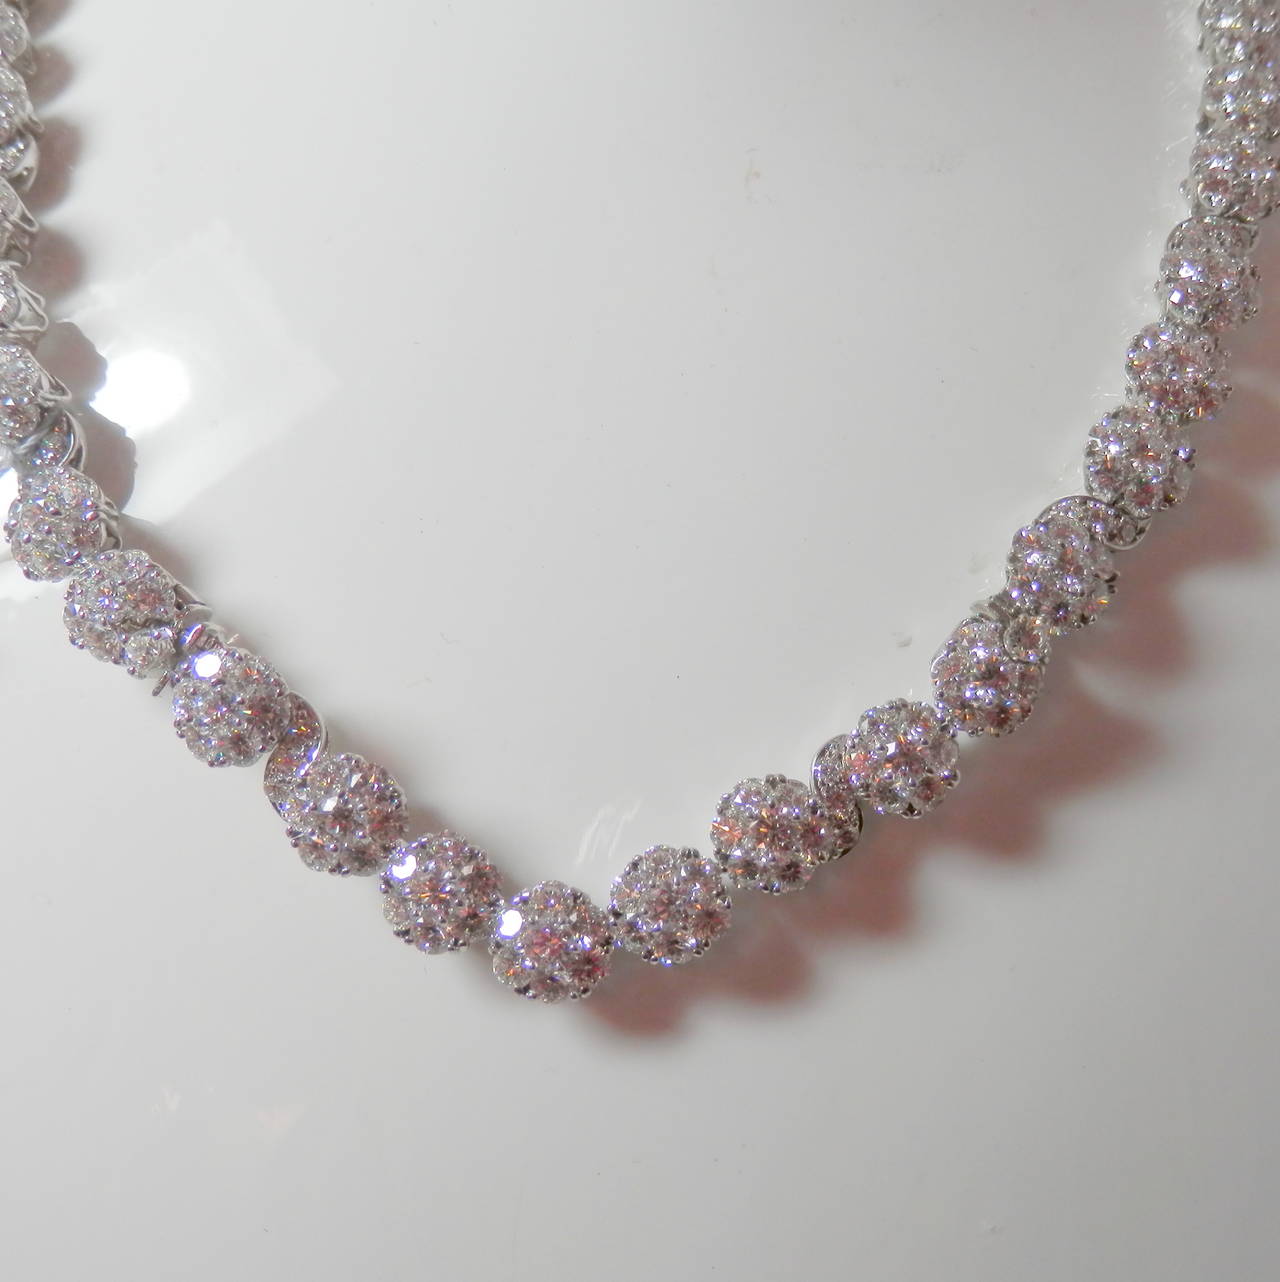 van cleef and arpels diamond necklace